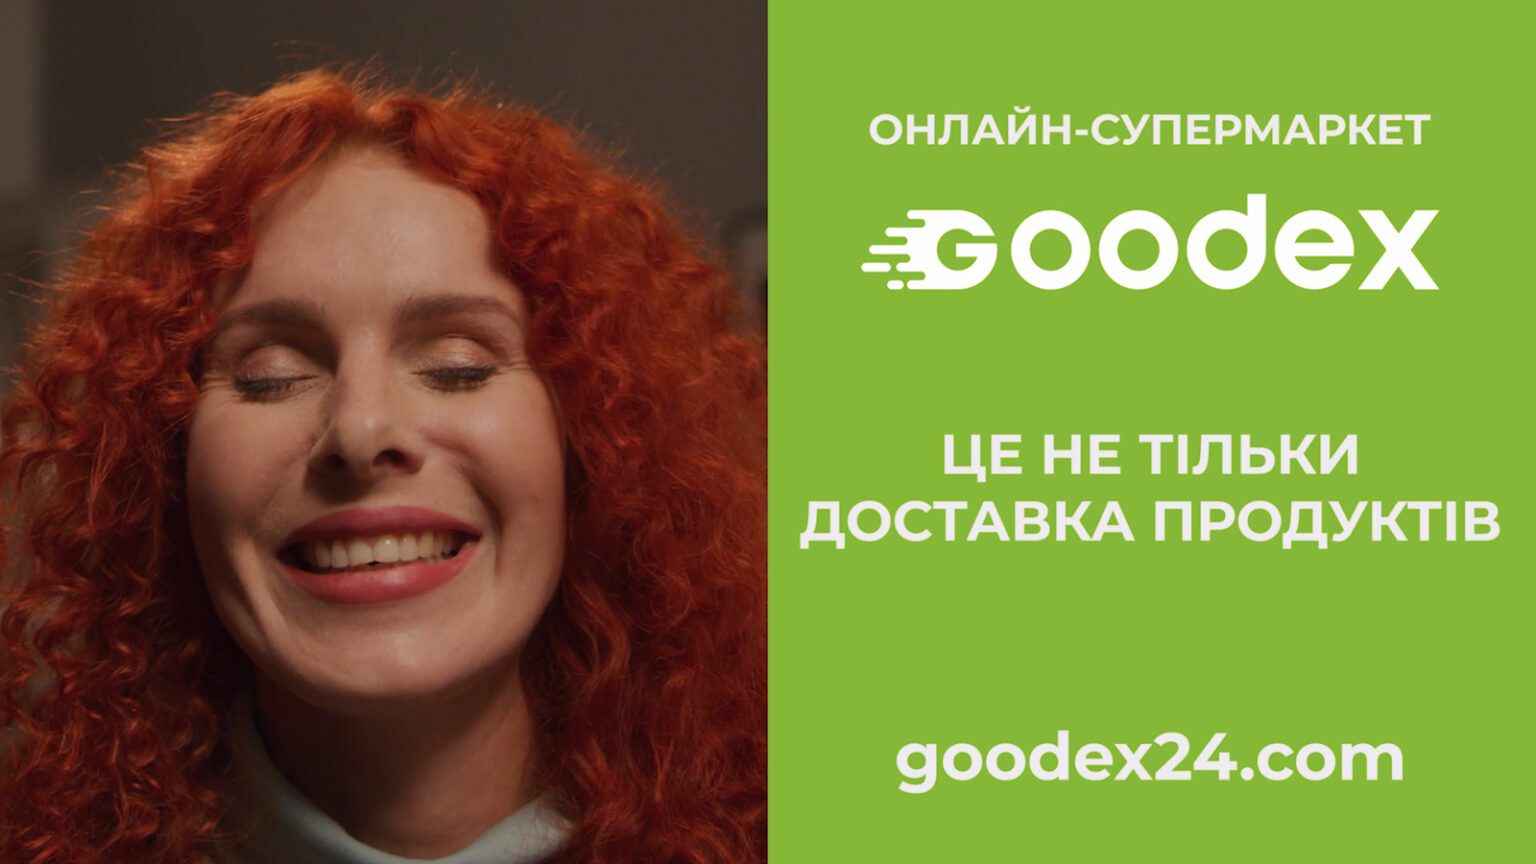 goodex